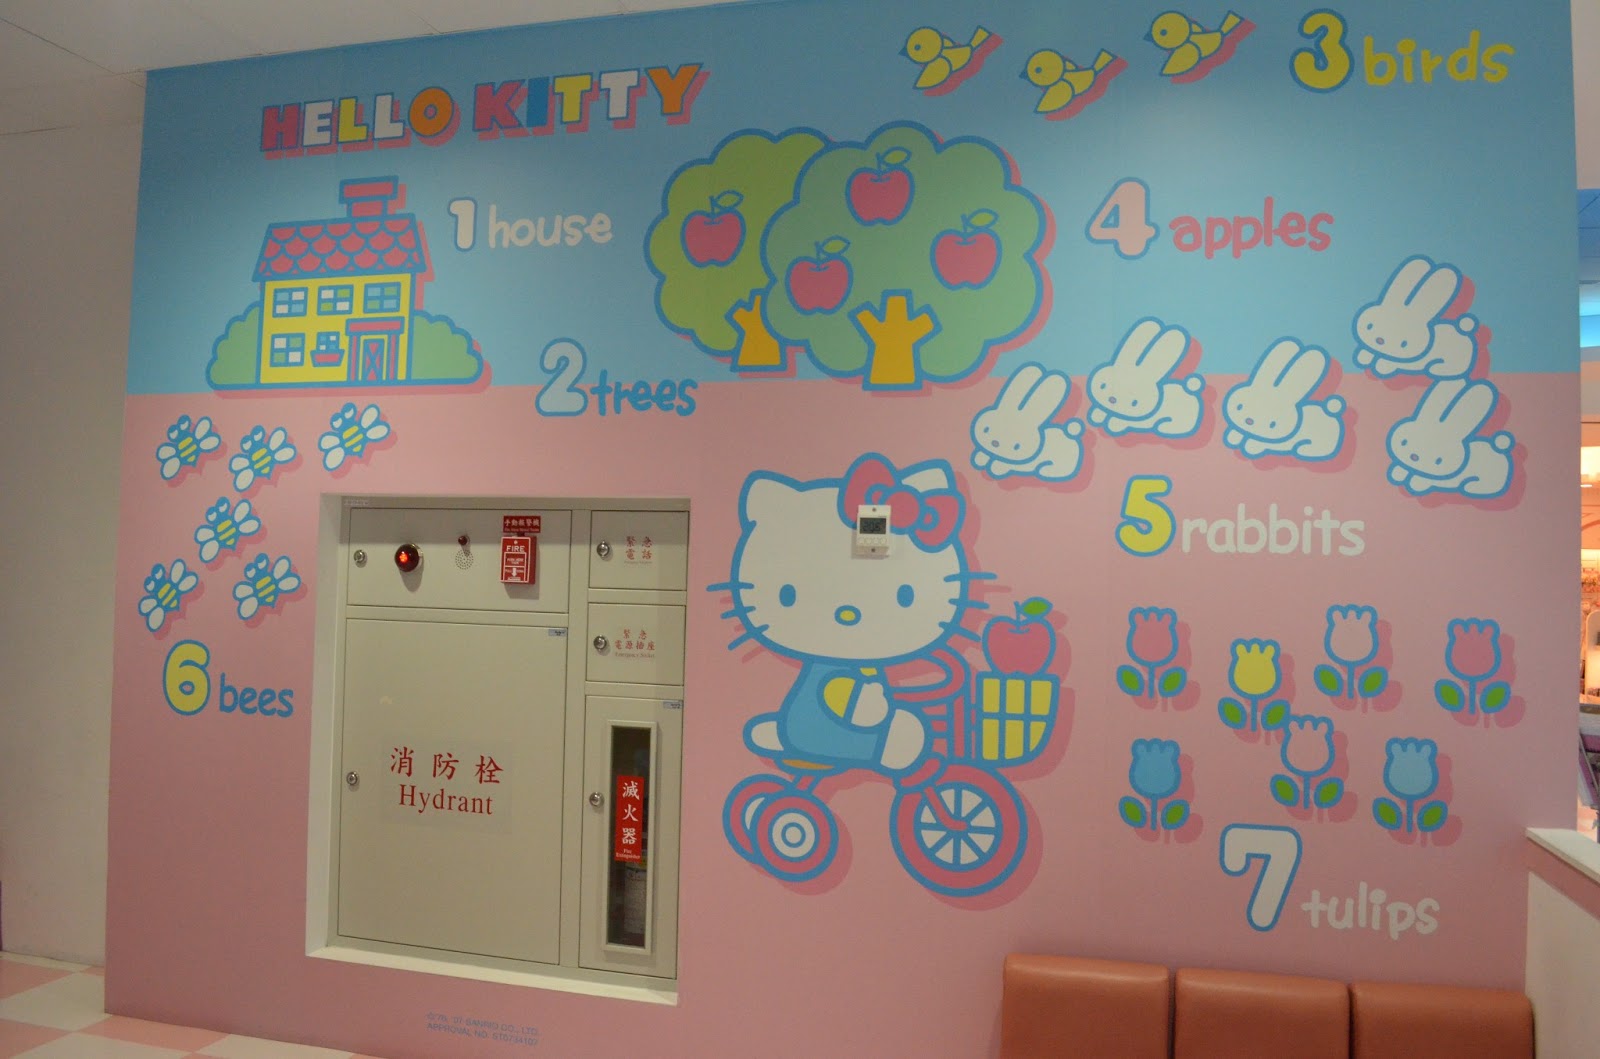 Eva Air Hello Kitty Terminal in Taiwan | A Light Review